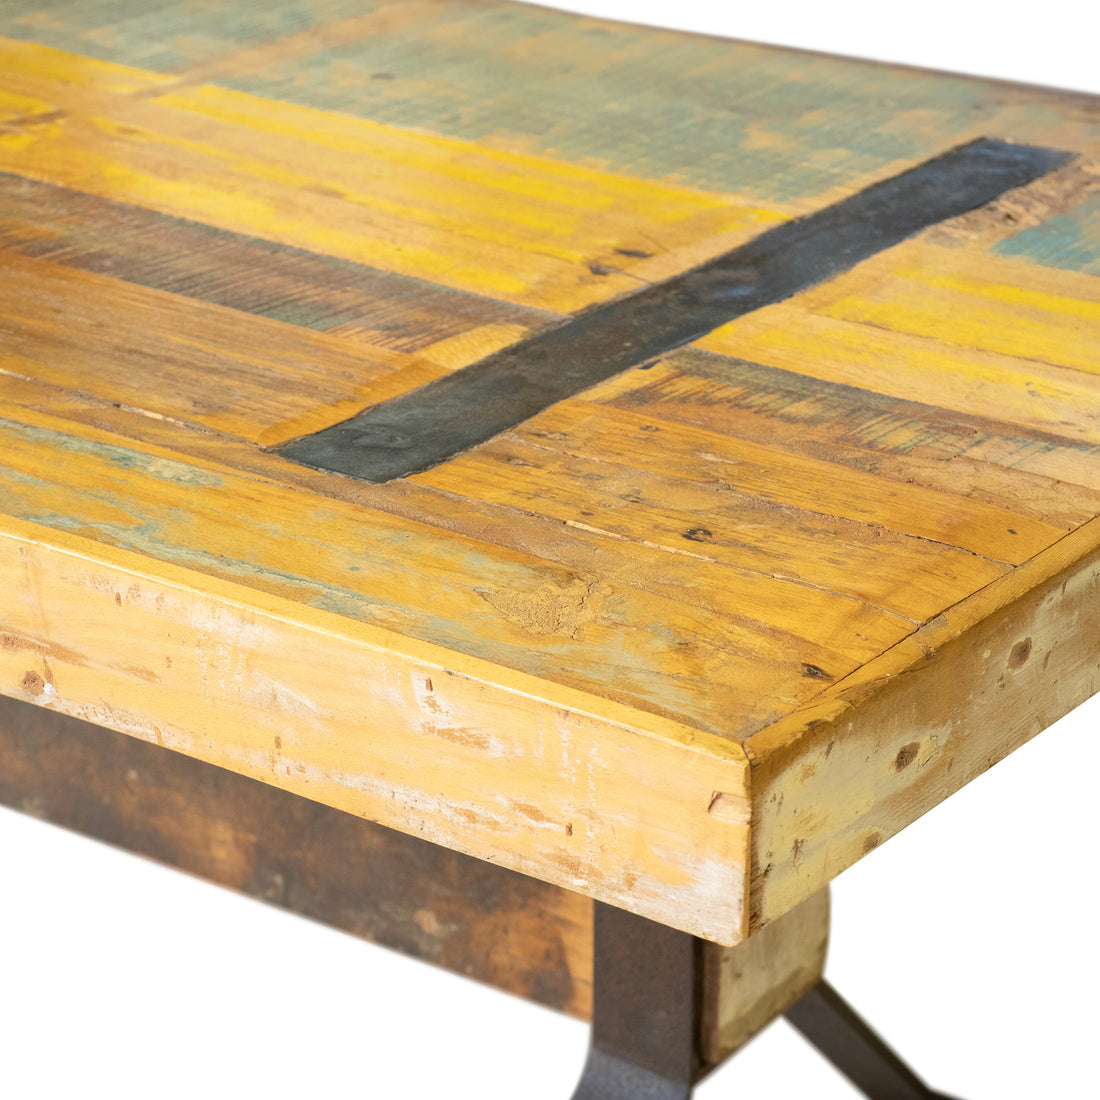 Rustic Wood & Steel Coffee Table